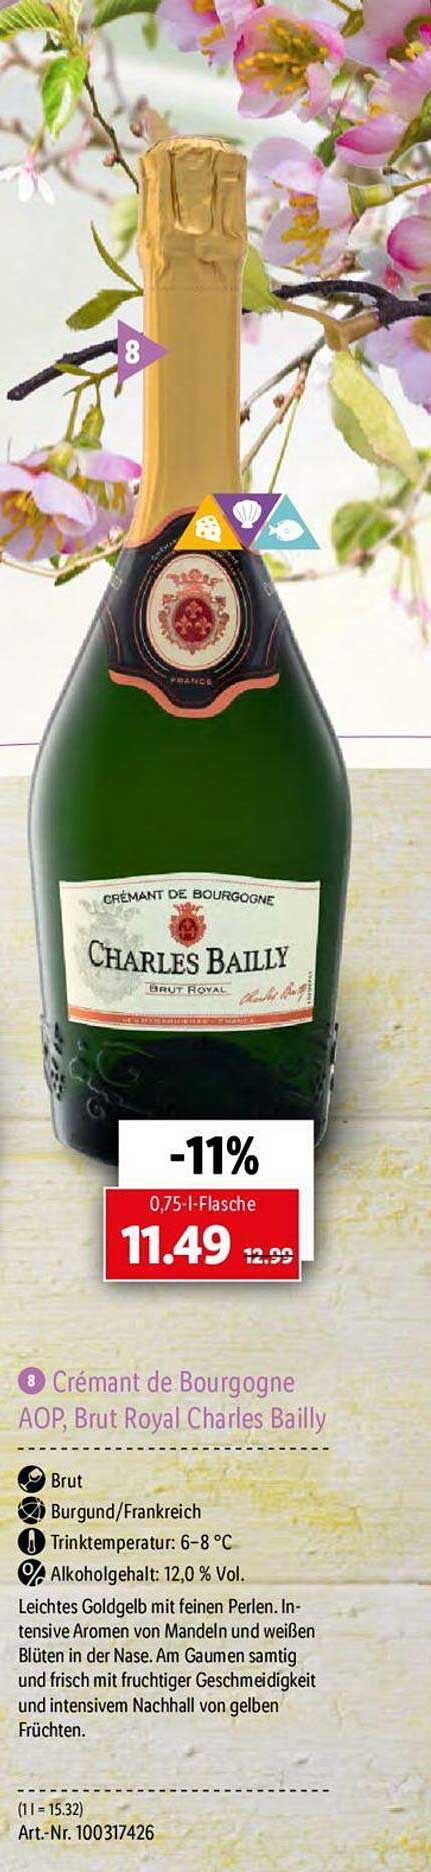 Charles Aop bei Bailly Lidl Cremant Angebot Royal Brut De Bourgogne